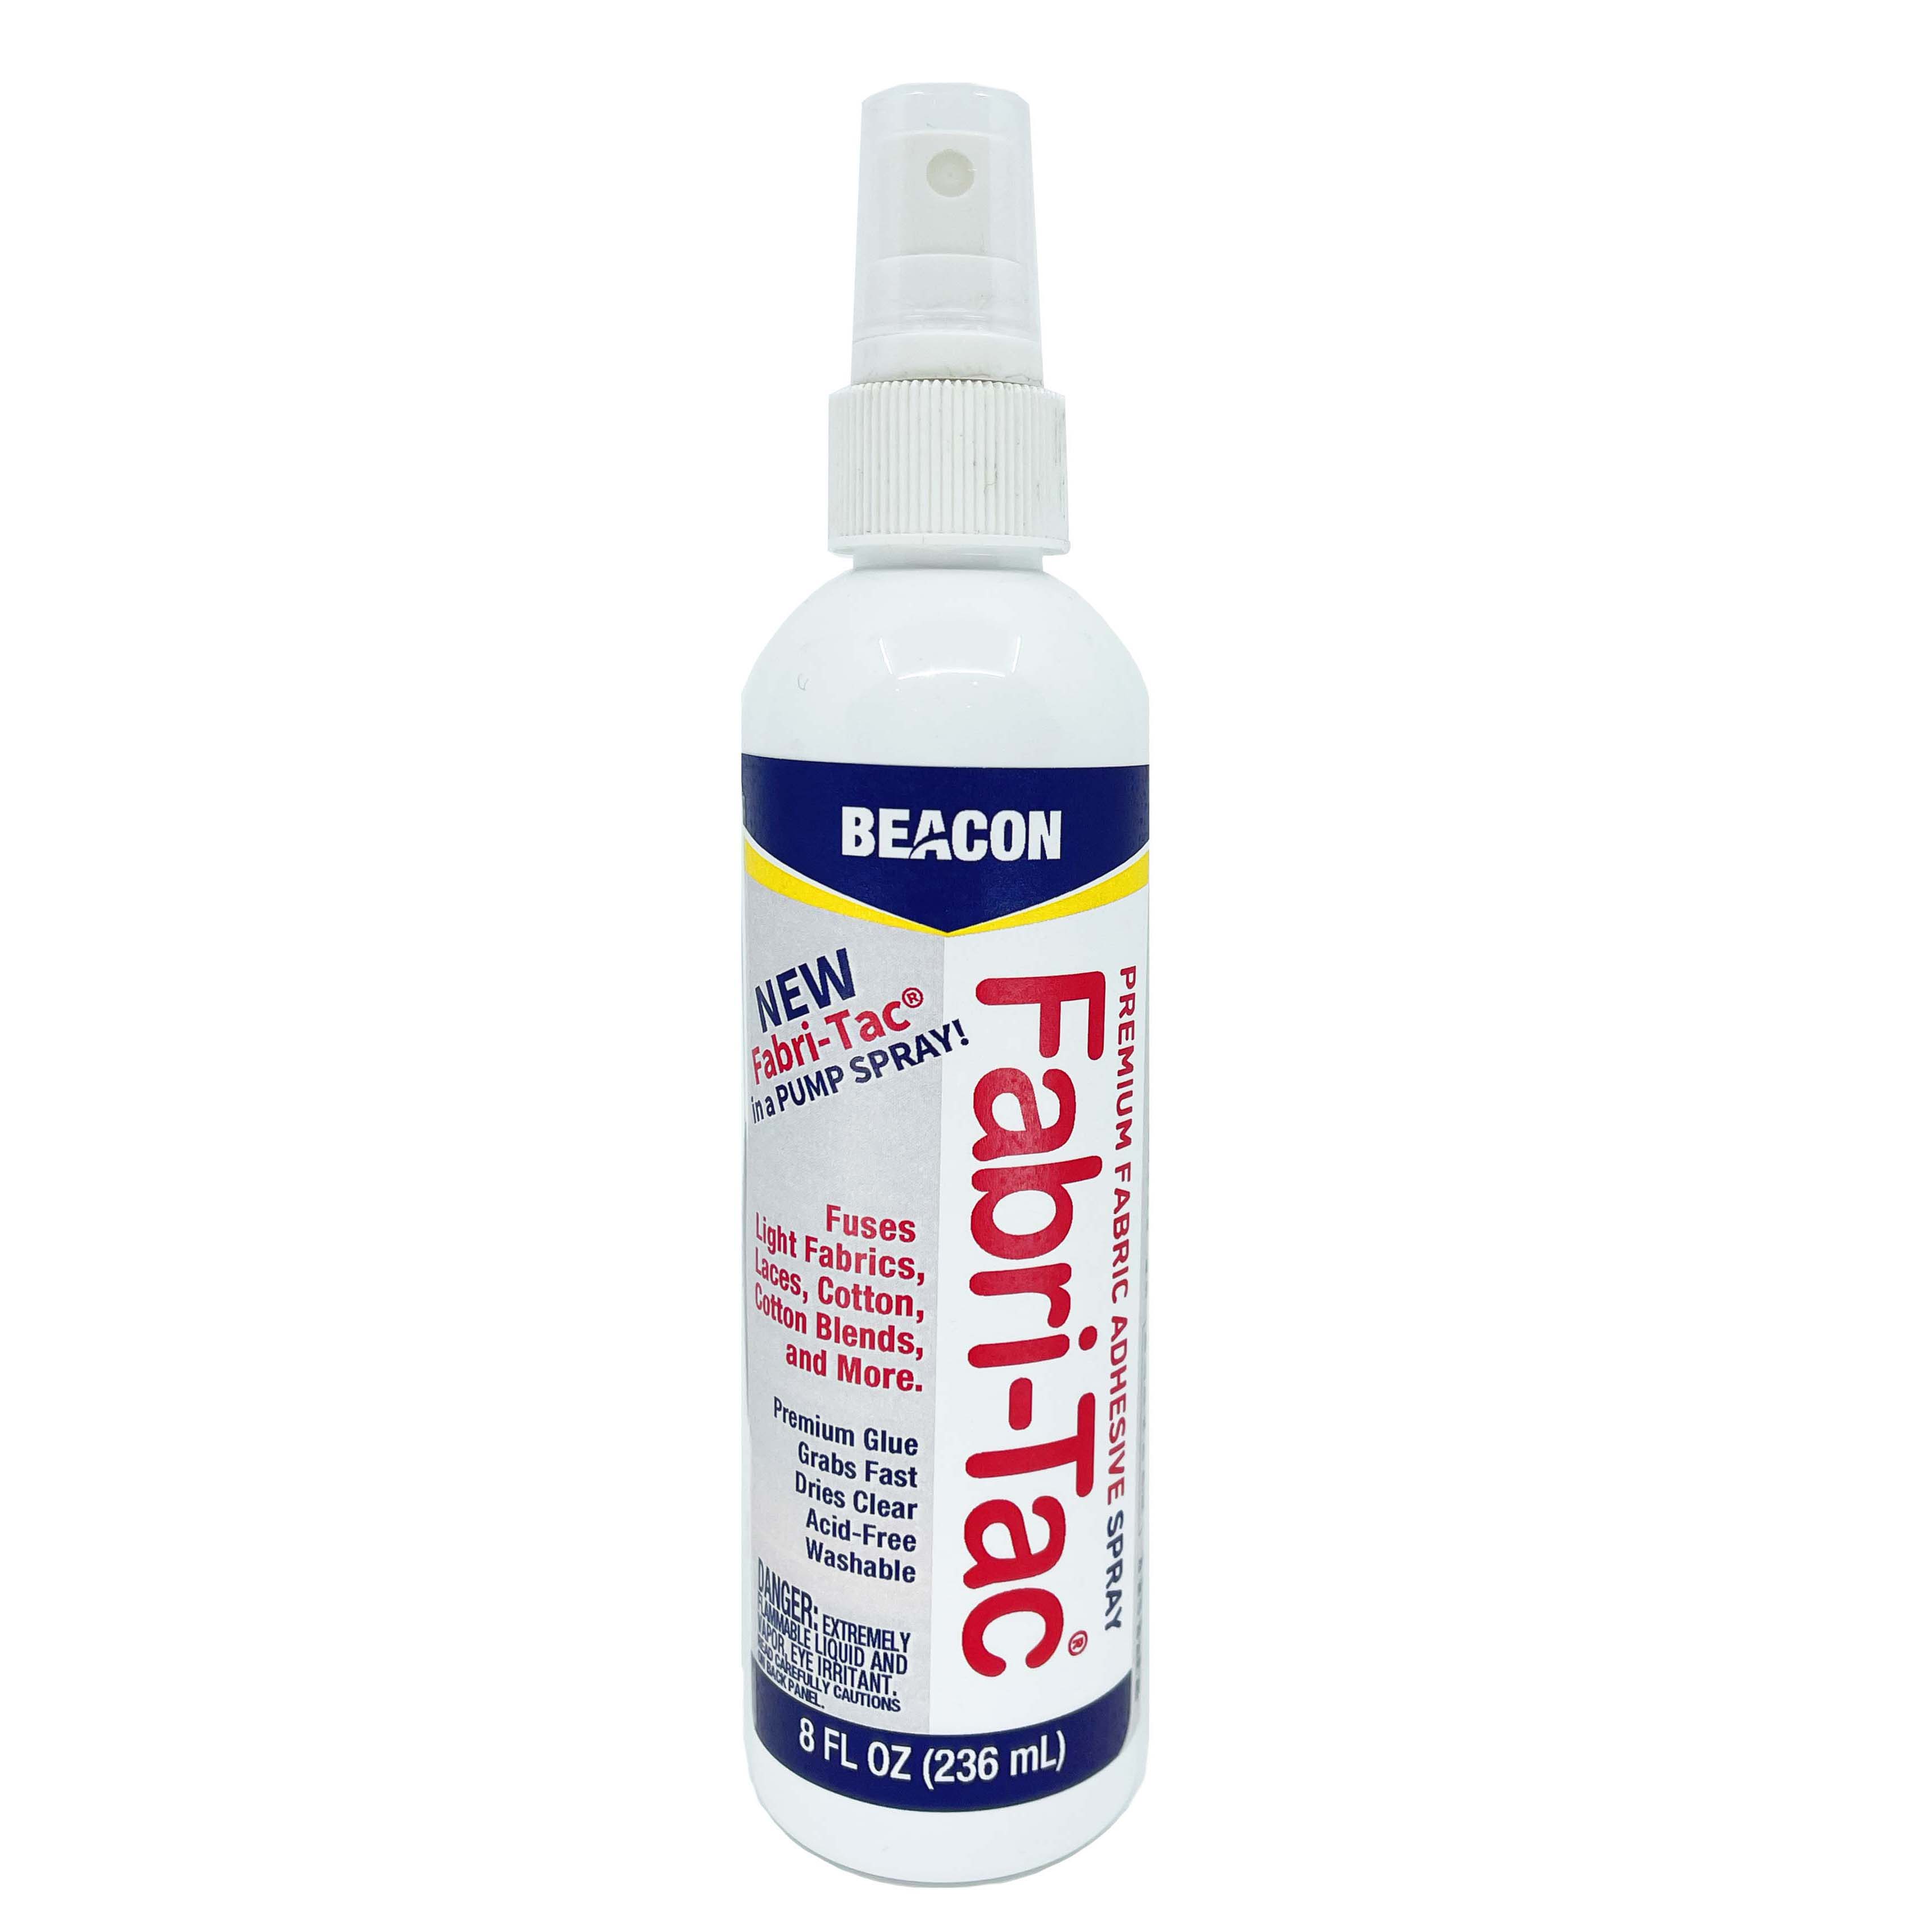 Fabri-Tac® STRETCH Glue